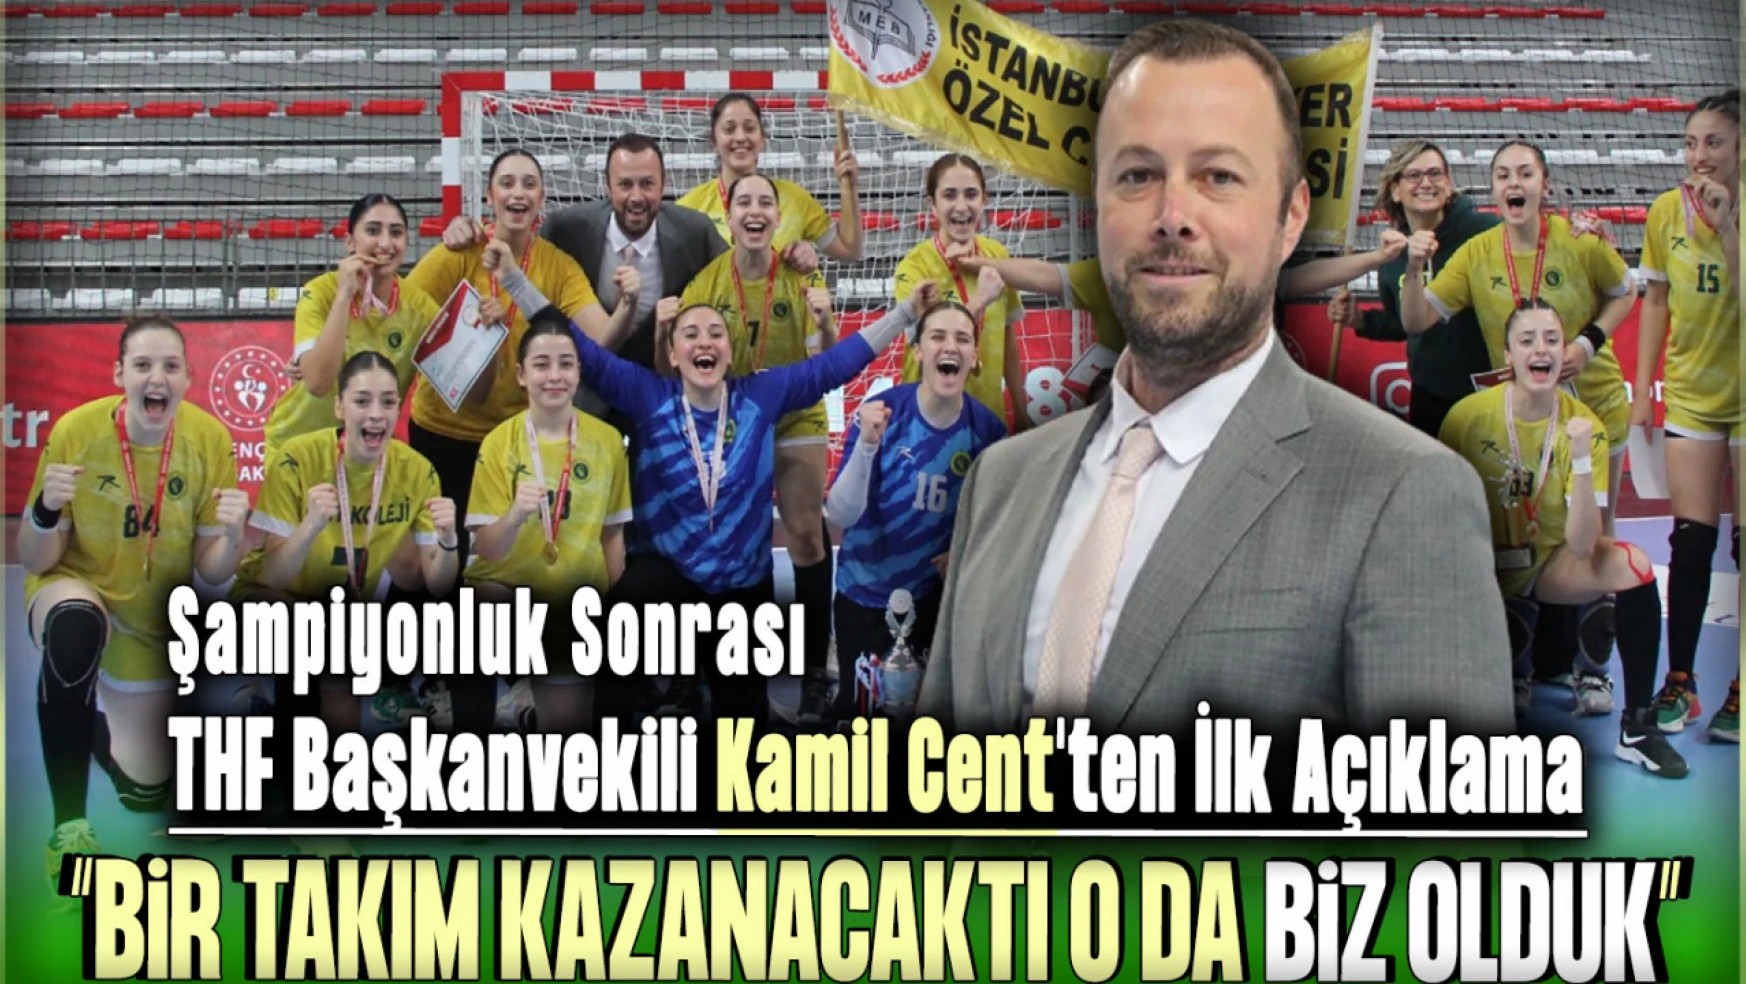 Şampiyonluk Sonrası Türkiye Hentbol Federasyonu Başkanvekili Kamil Cent'ten İlk Açıklama